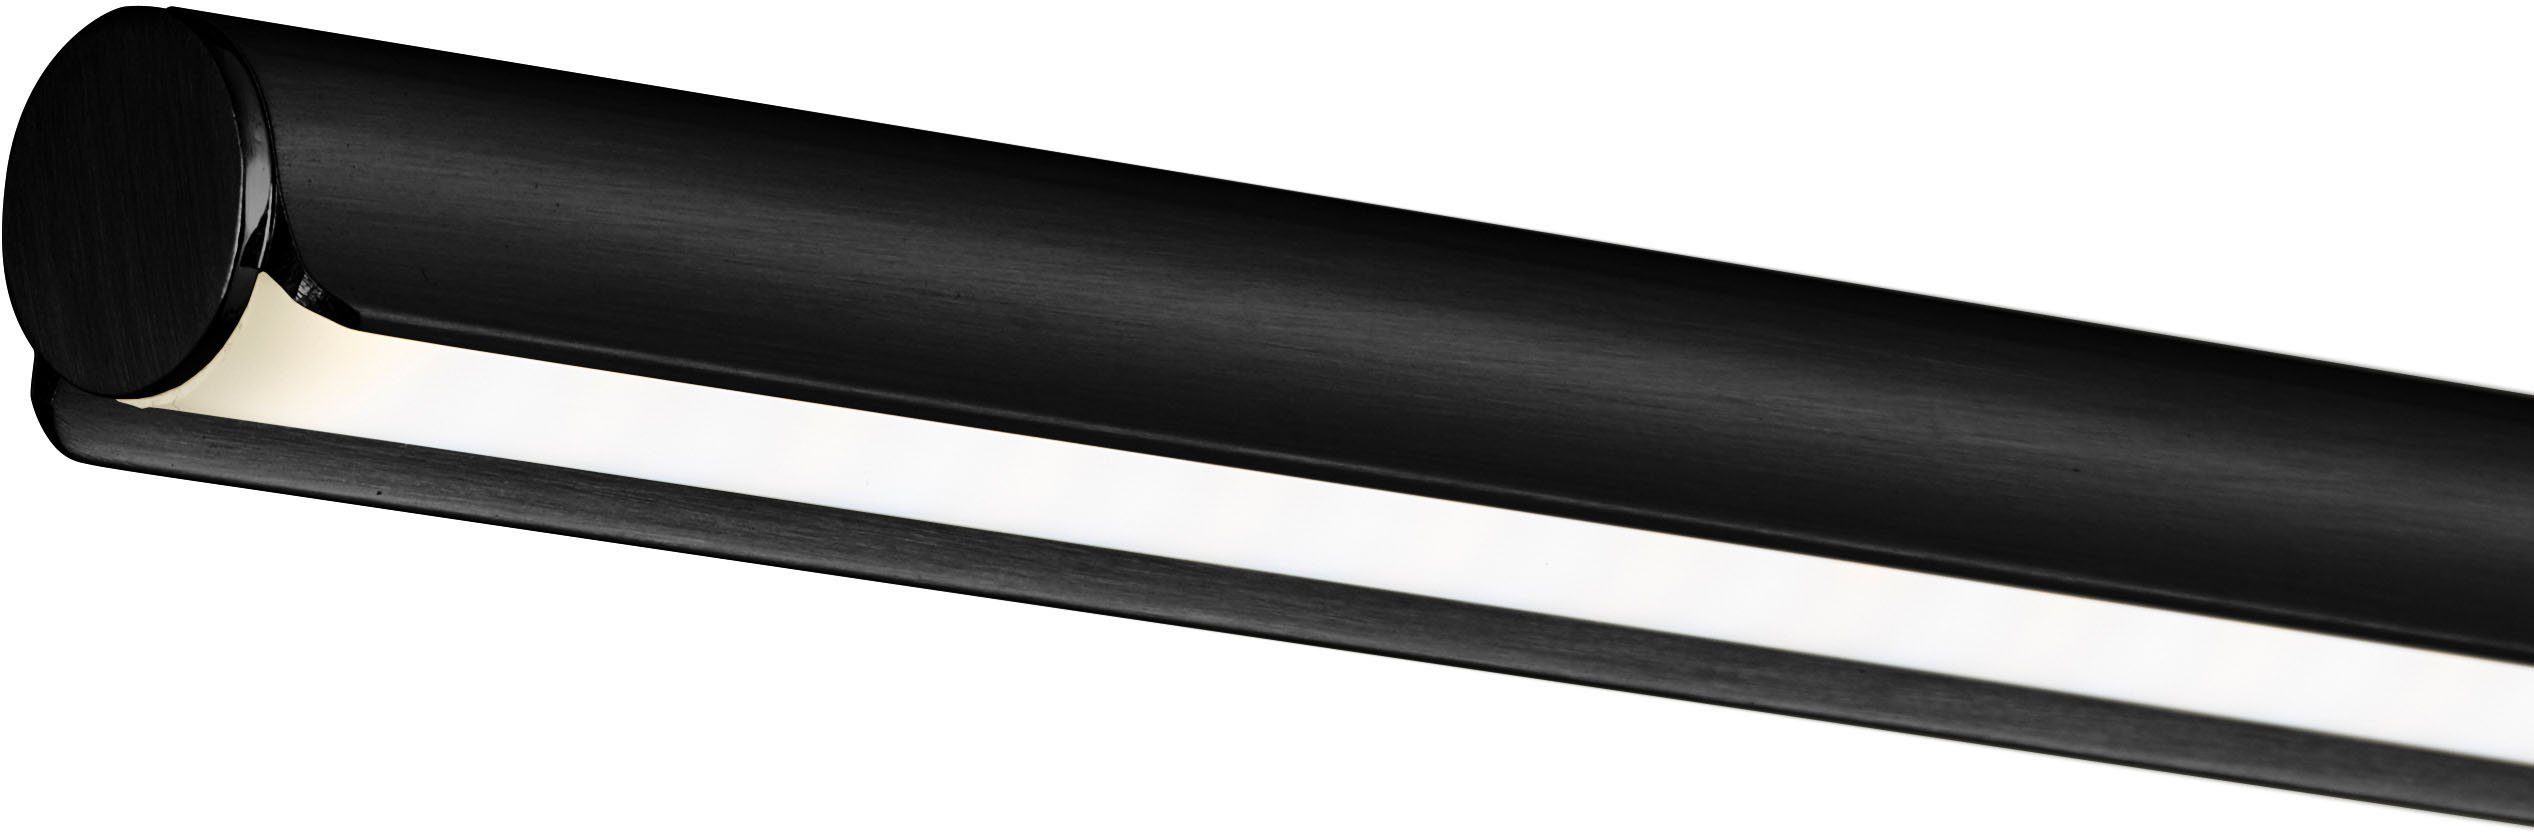 FISCHER & HONSEL Stehlampe Nami, integriert, kaltweiß warmweiß fest - Dimmfunktion, LED